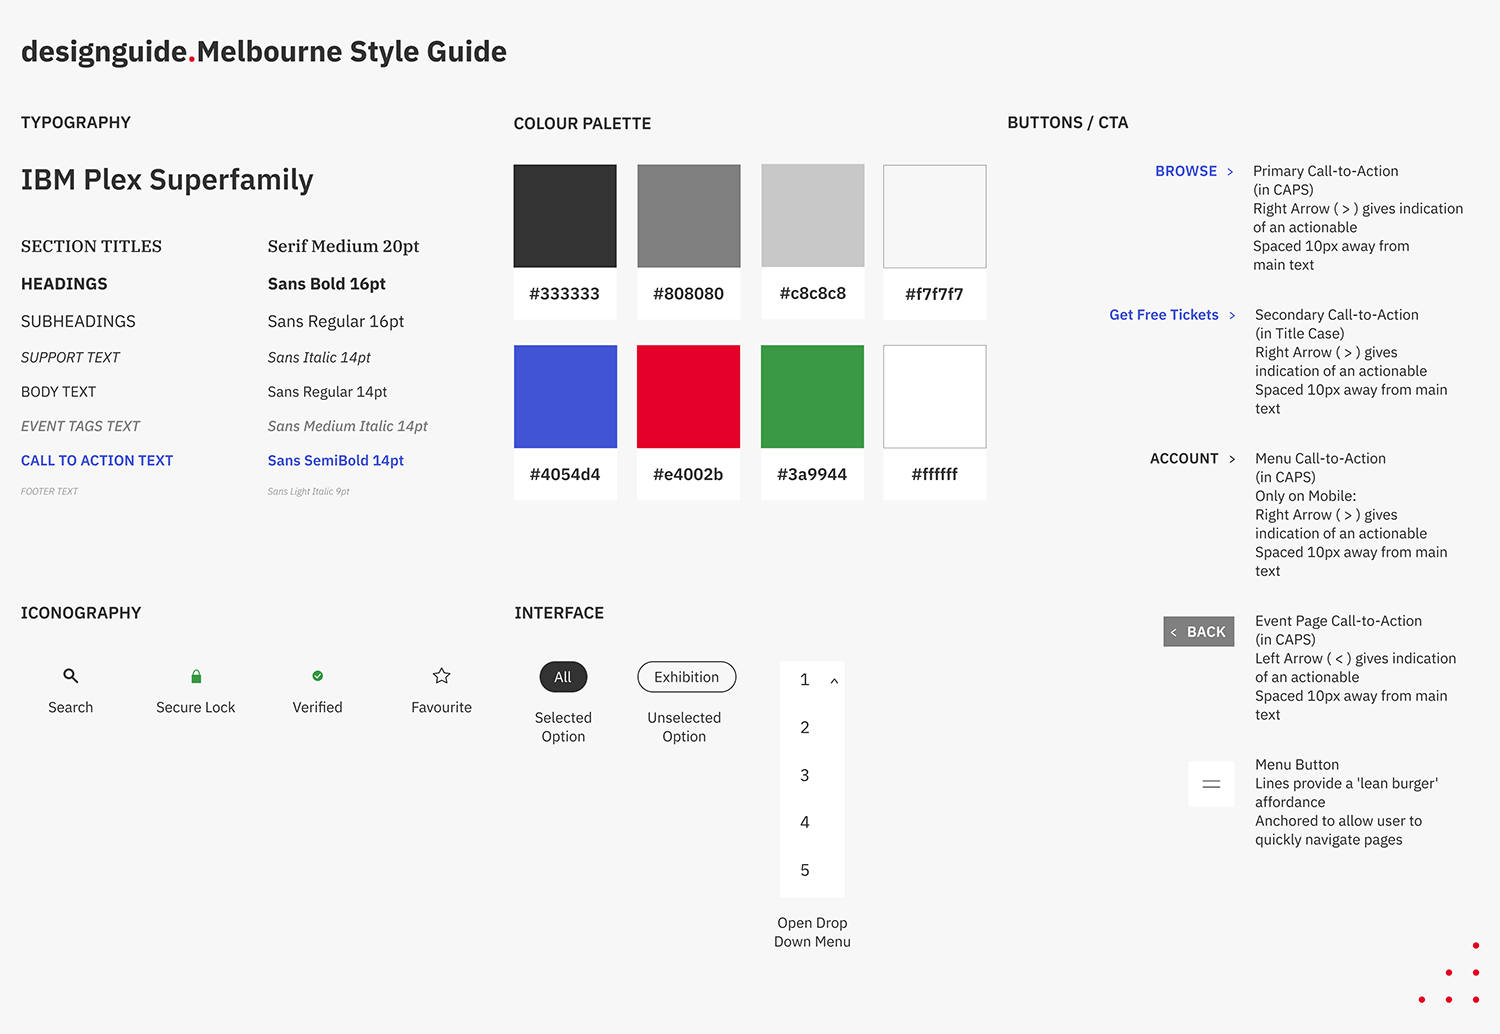 Design Guide's Design Guide